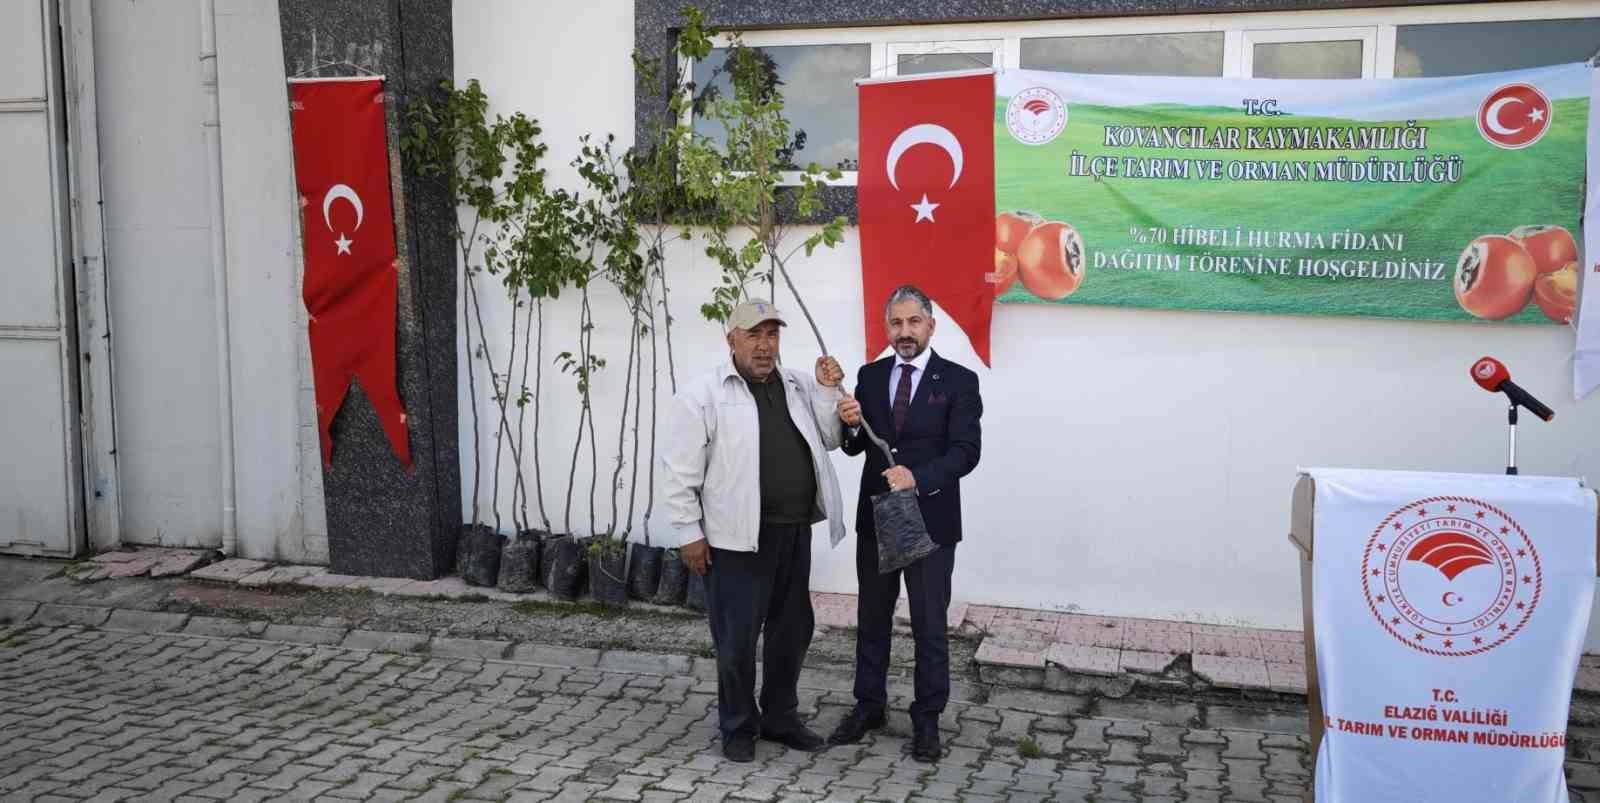 Elazığ’da Trabzon hurması fidan dağıtımı gerçekleşti
